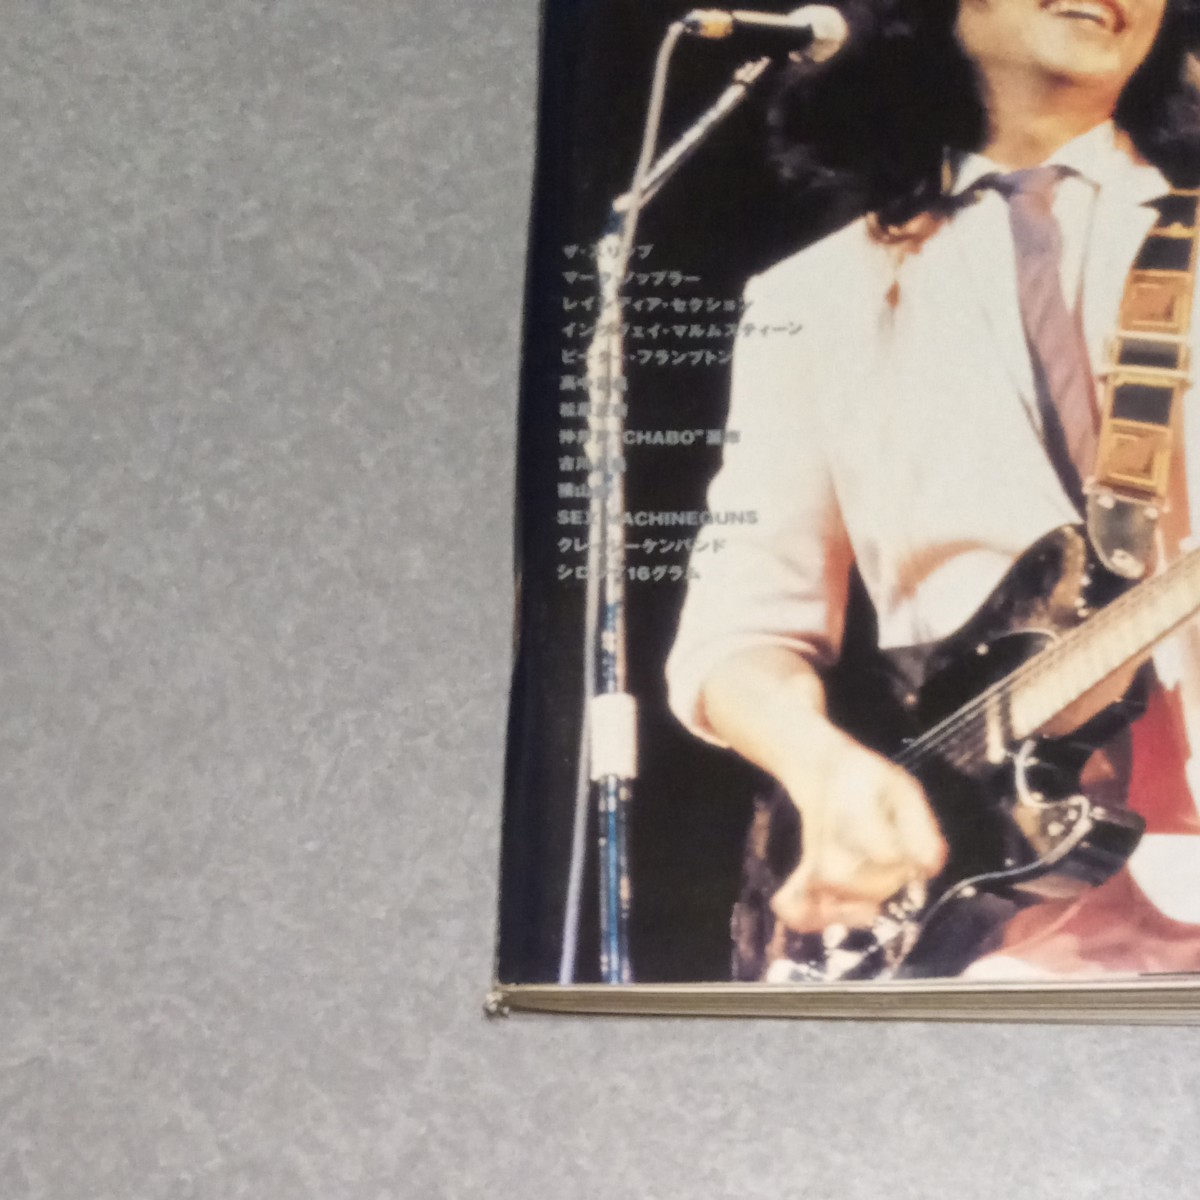 ギターマガジン 山下達郎 2002.11 永久保存版山下達郎コンプリートギターエディション